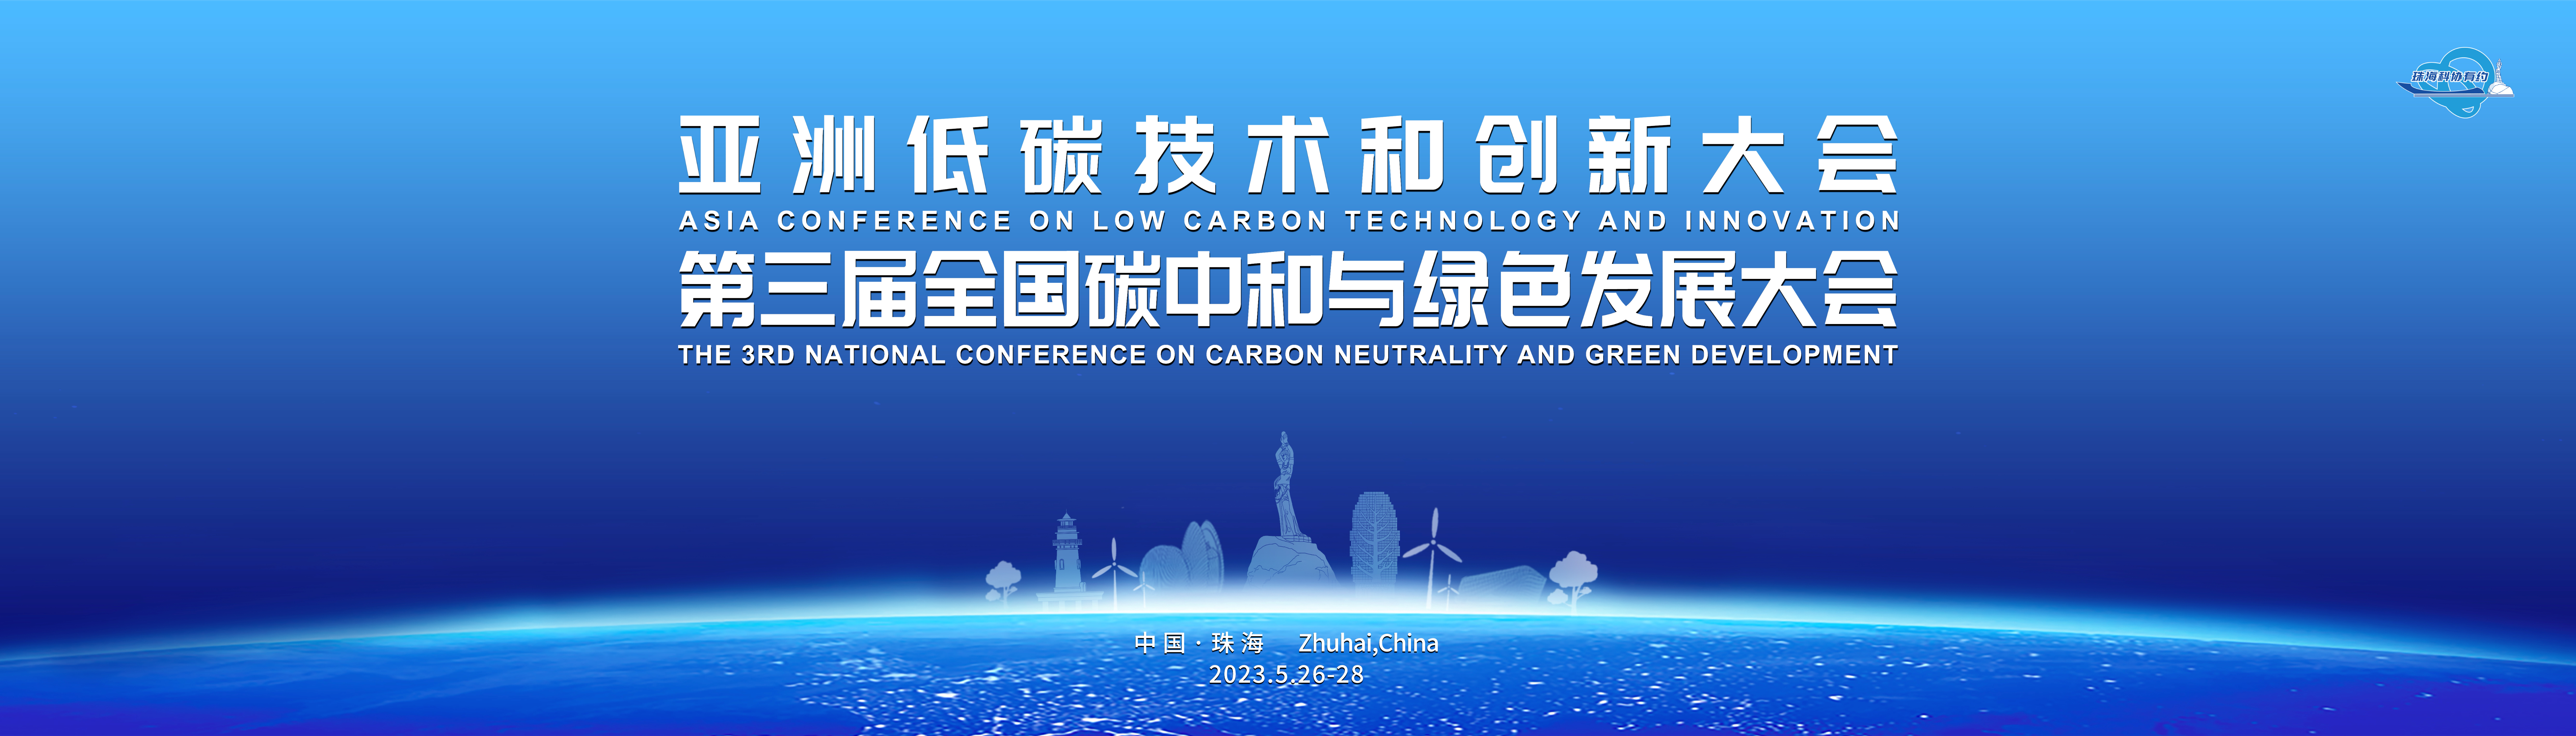 助力绿色生态建设  亚洲低碳技术和创新大会即将举办